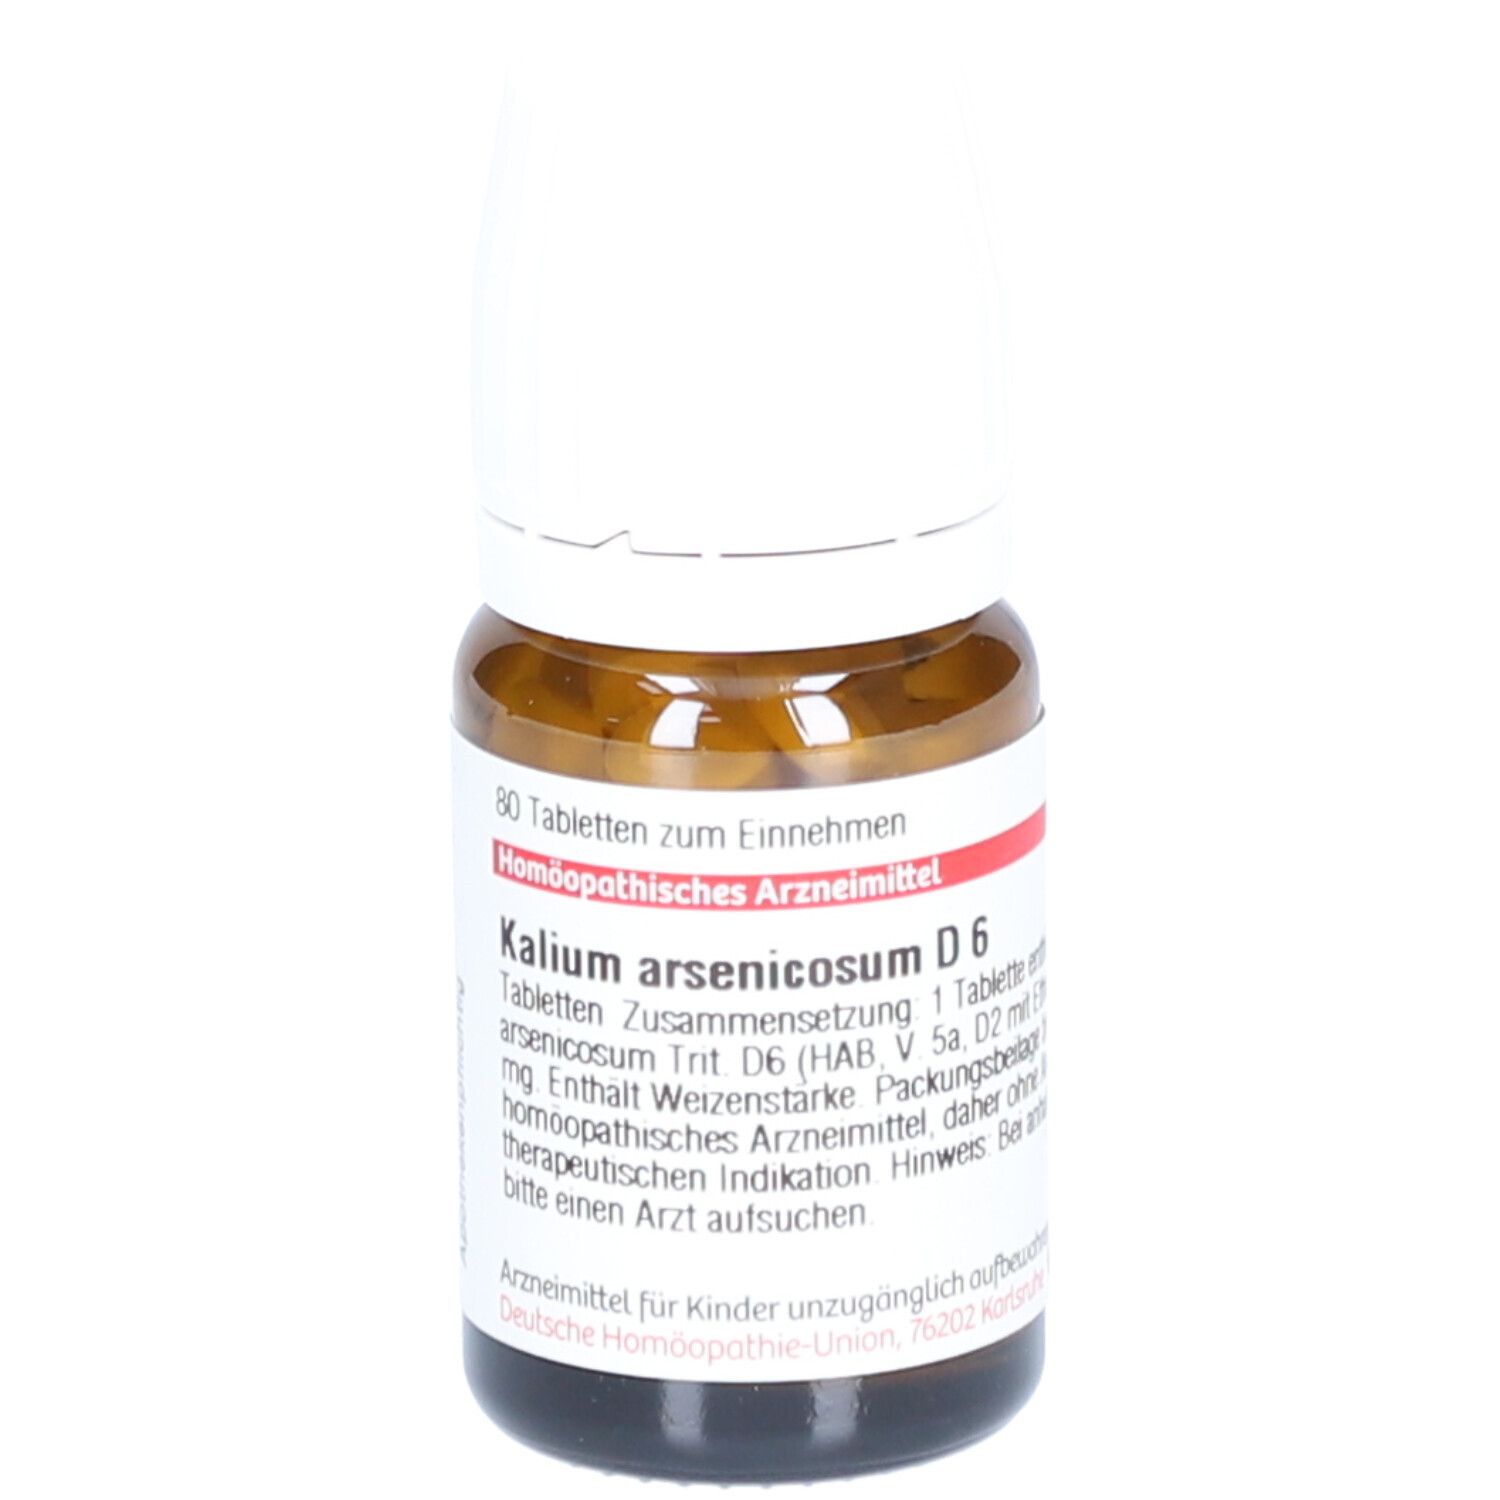 DHU Kalium Arsenicosum D6